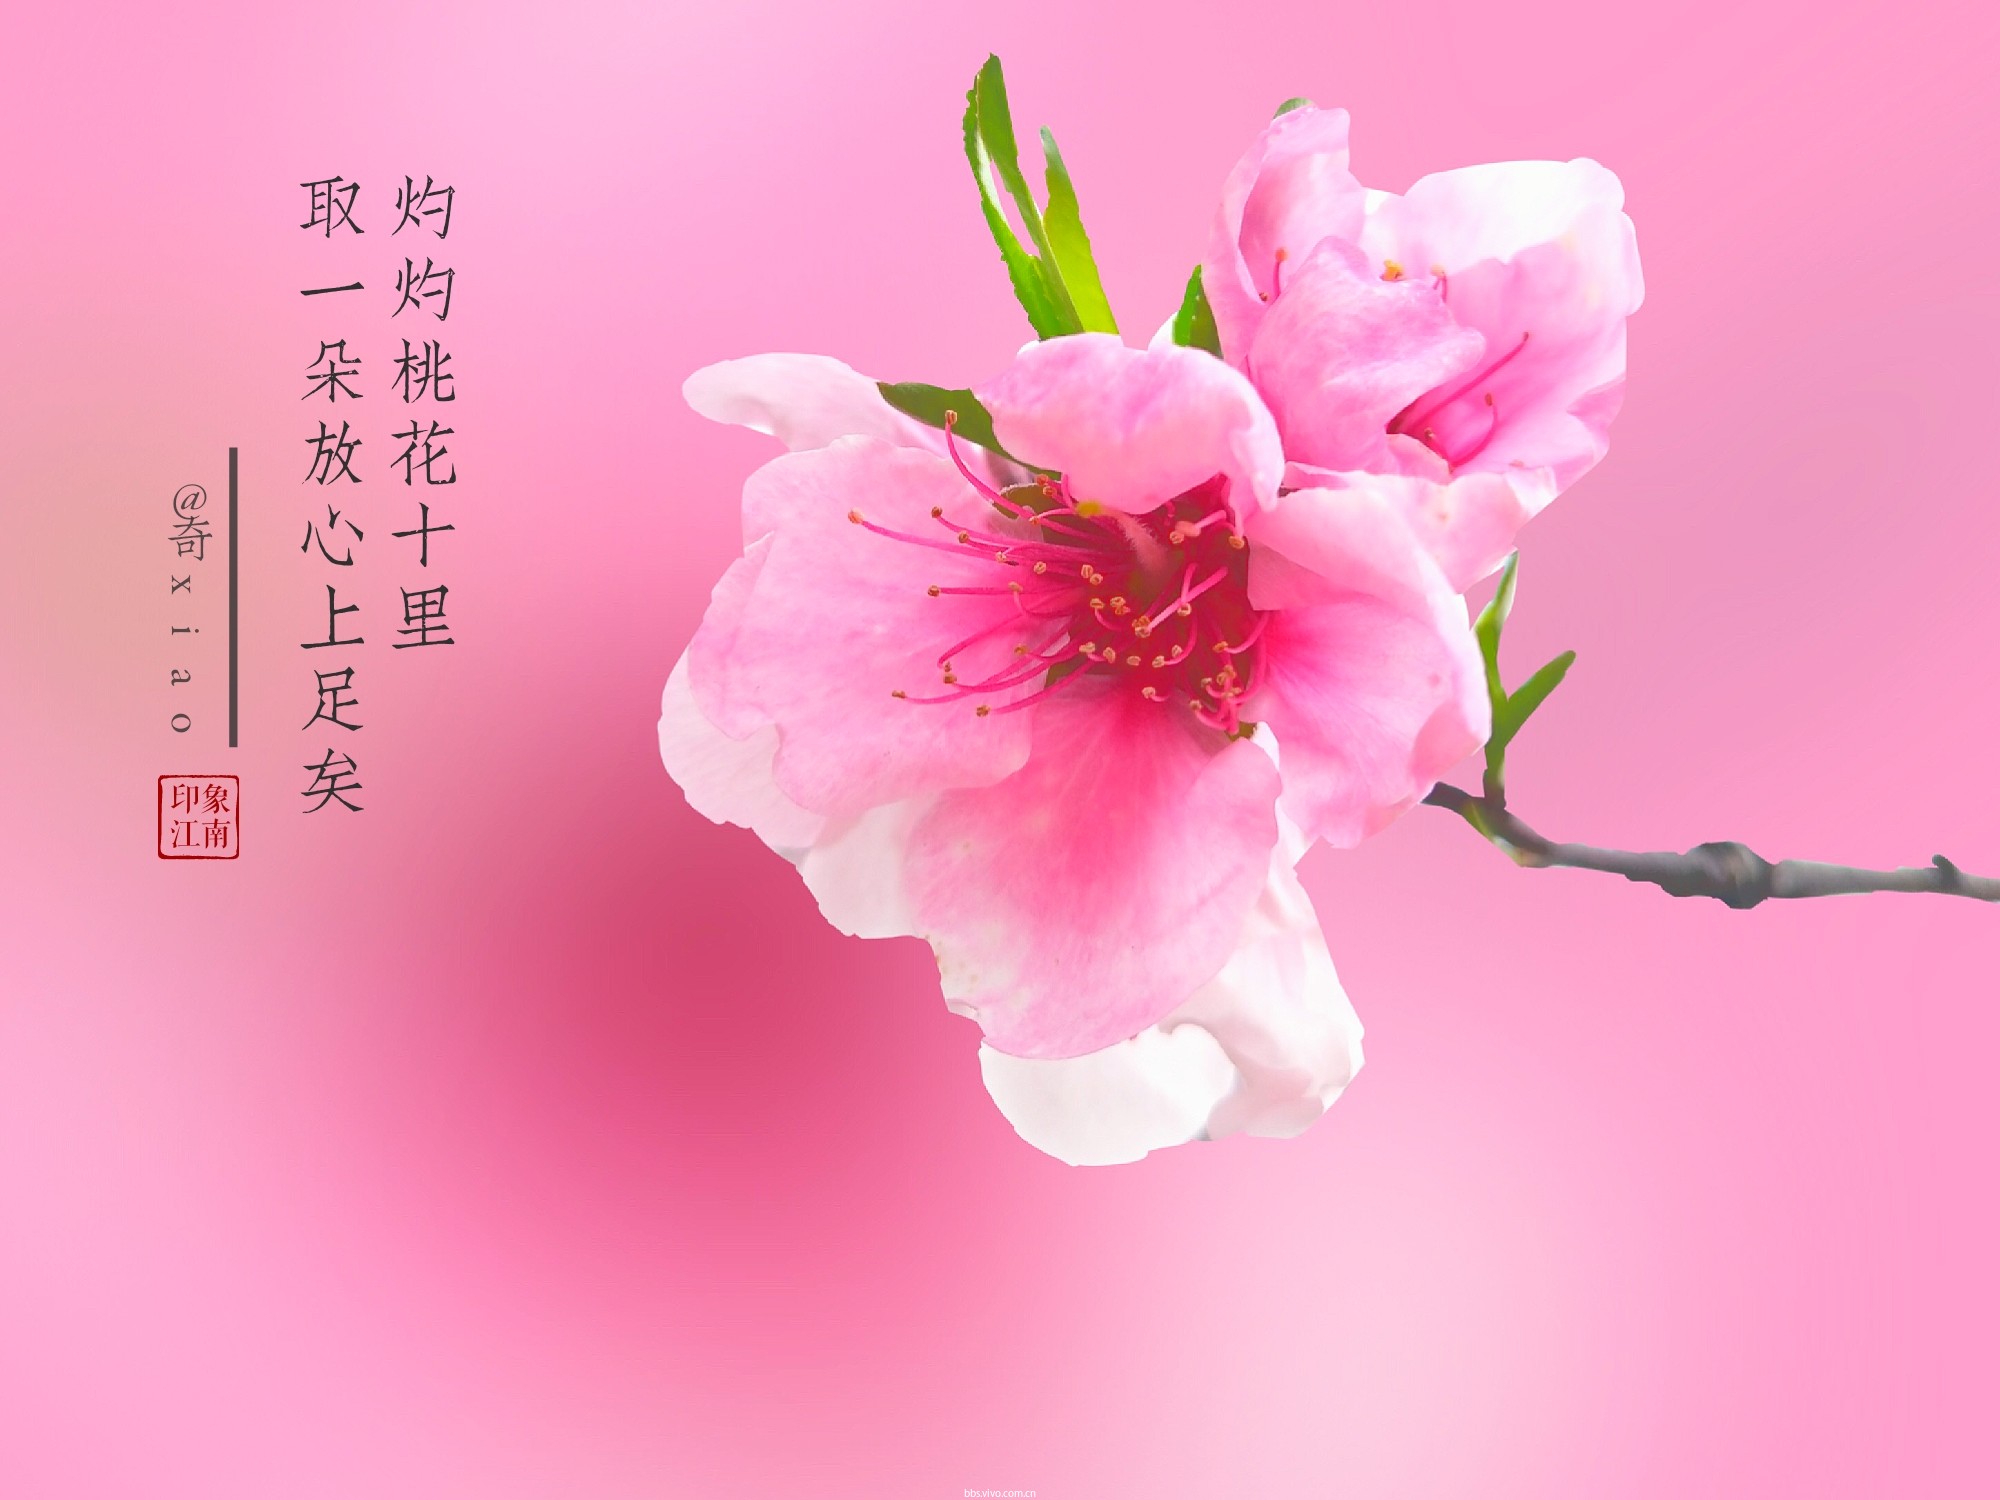 【初春记】三月桃花,笑春风